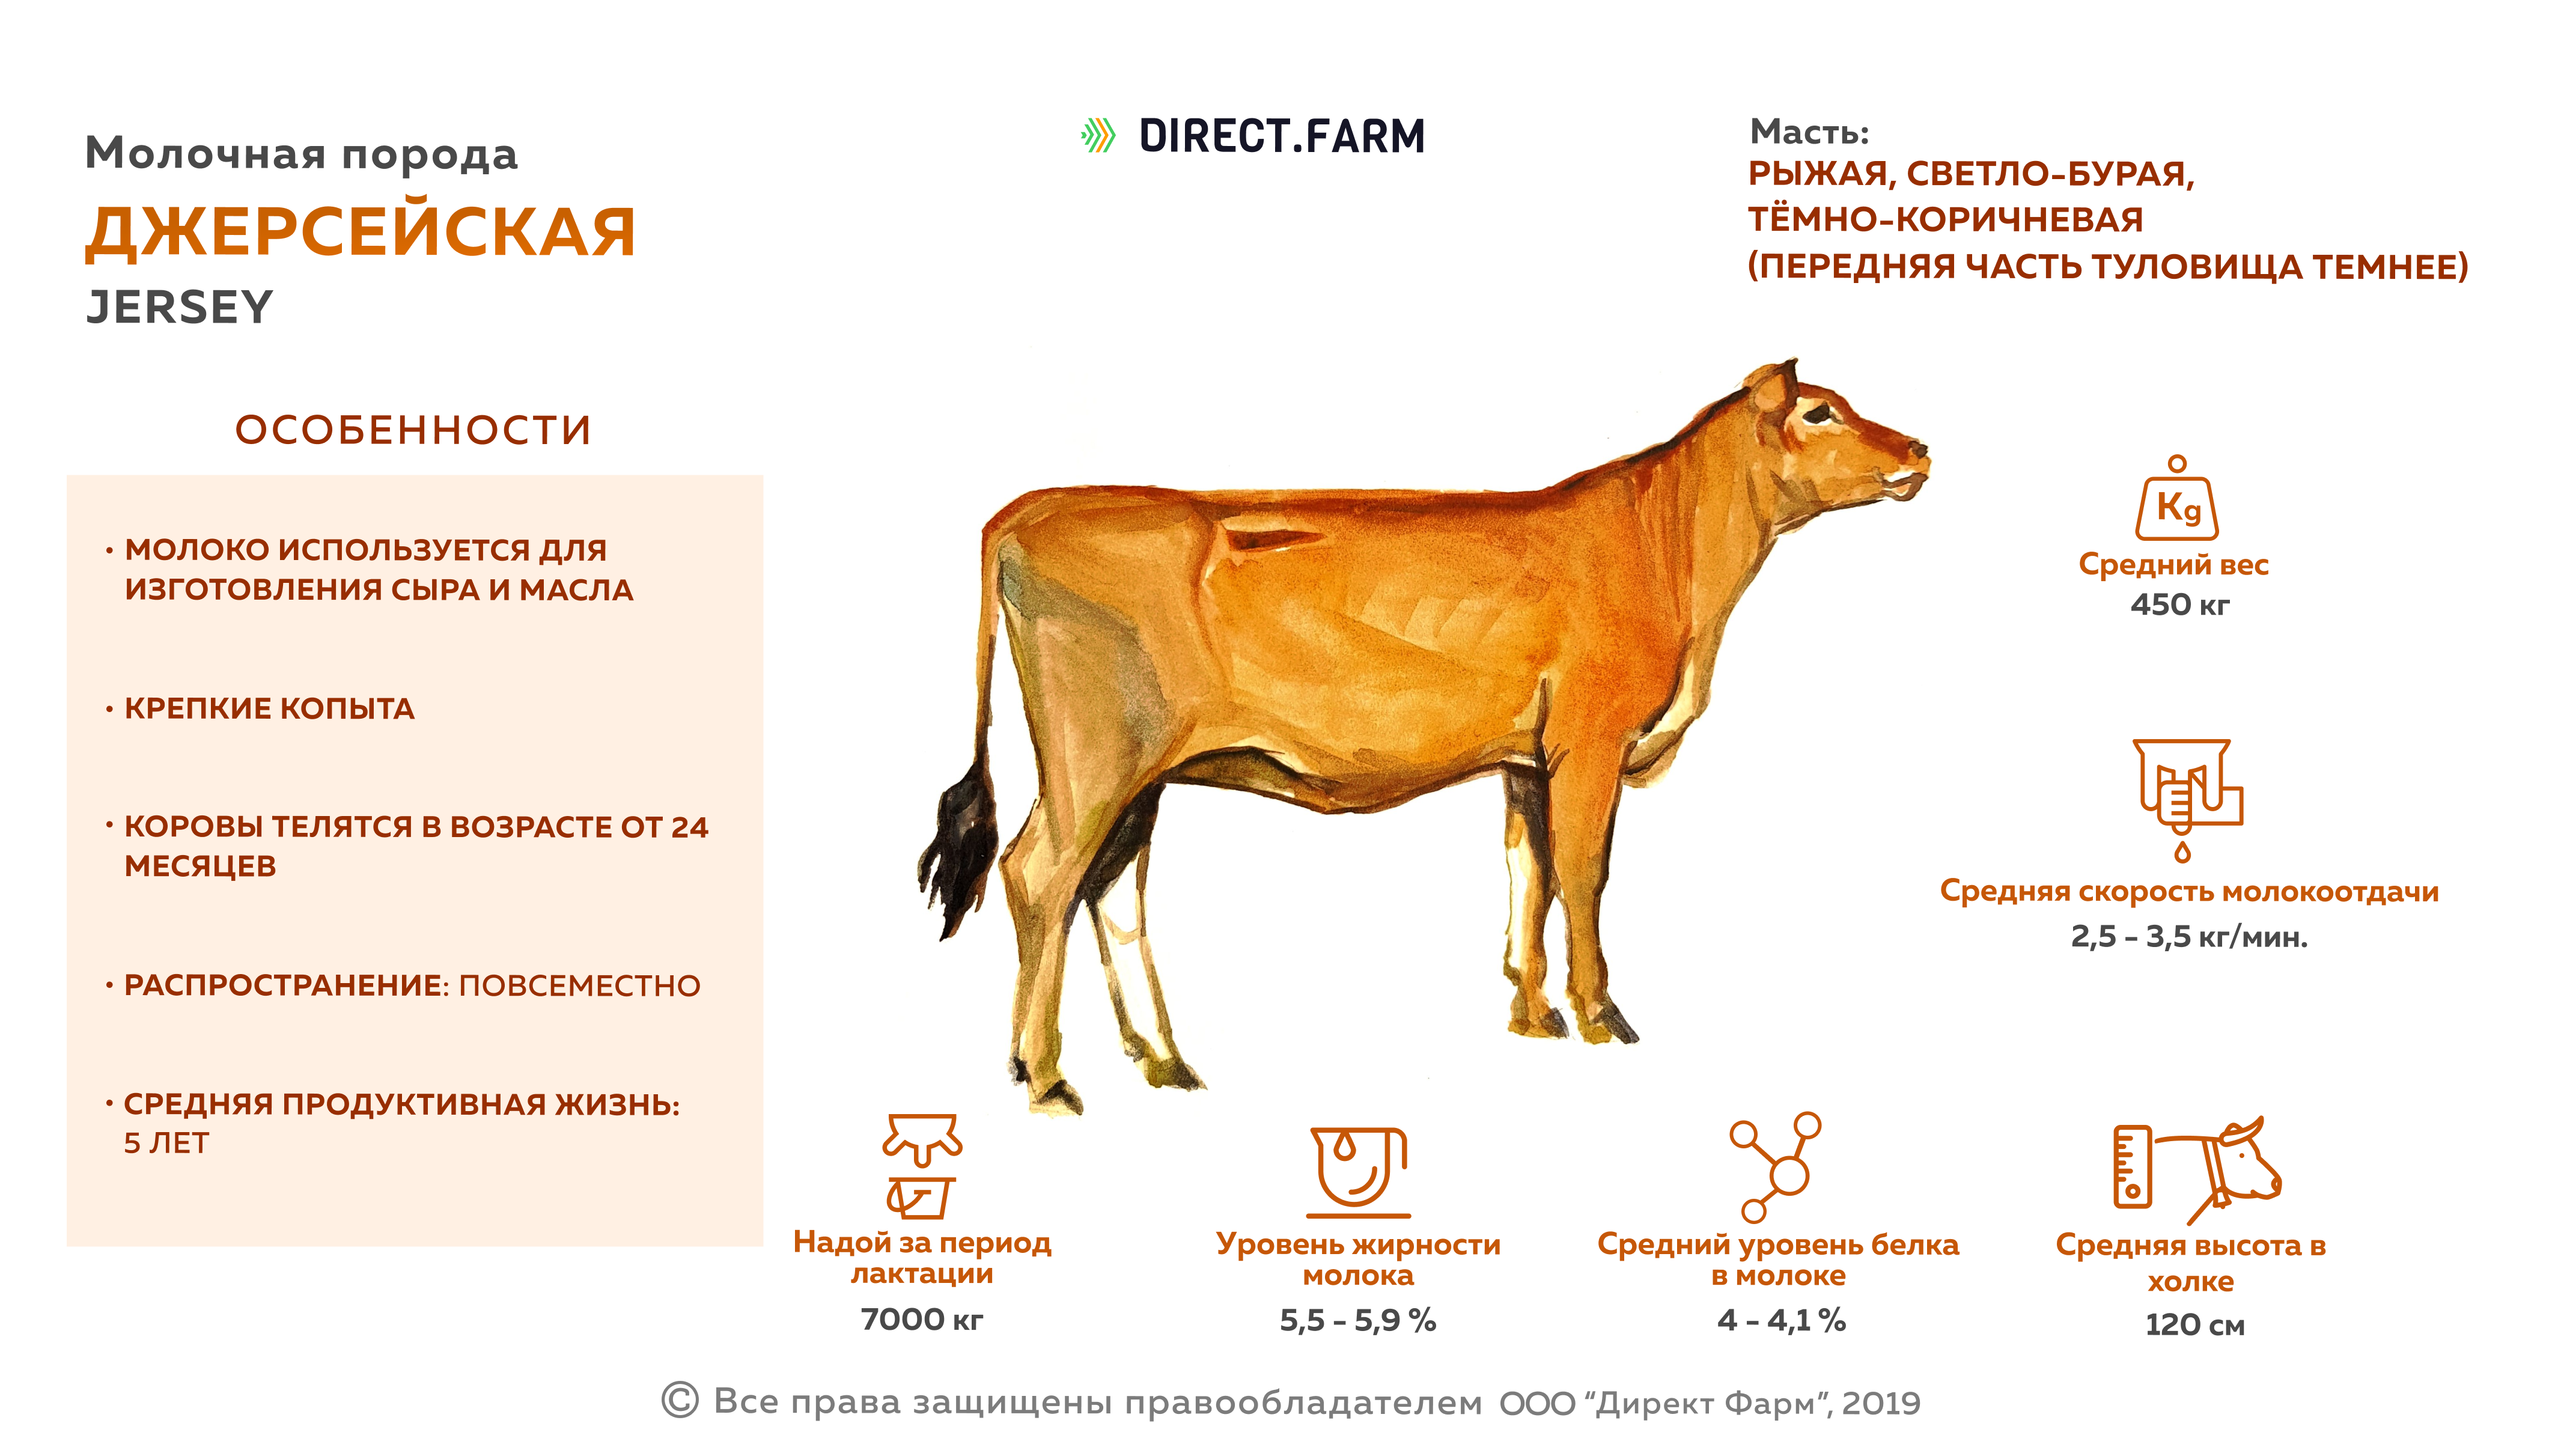 Продуктивные породы. Джерсейская порода коров характеристики молока. Джерсейская порода КРС. Джерсейская порода коров убойный выход. Джерси порода коров характеристика.